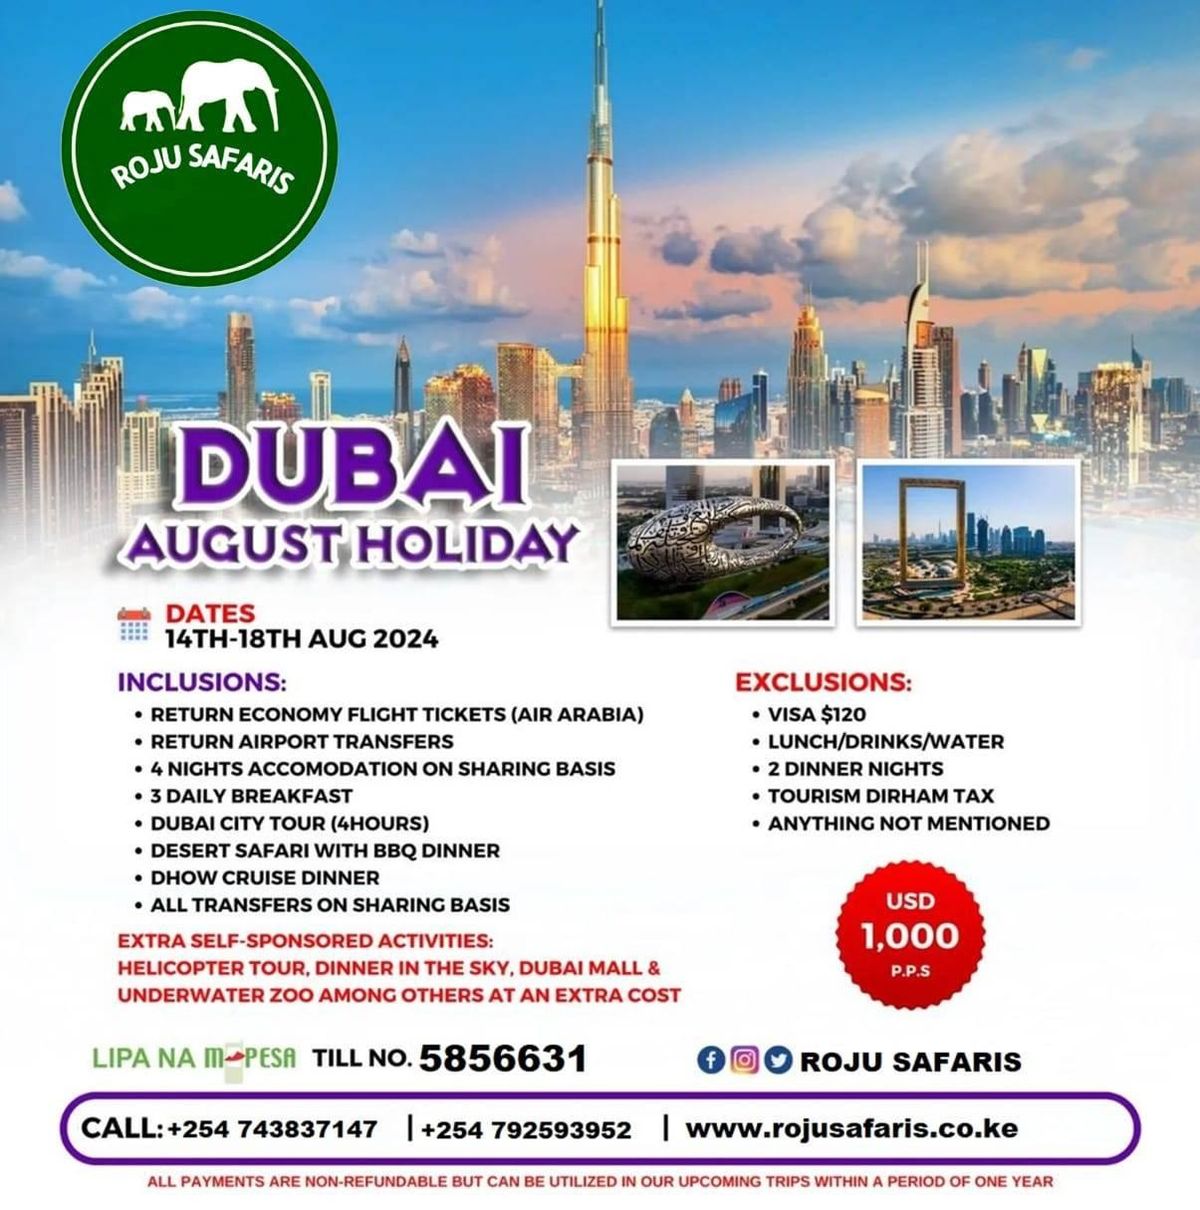 DUBAI AUGUST HOLIDAY